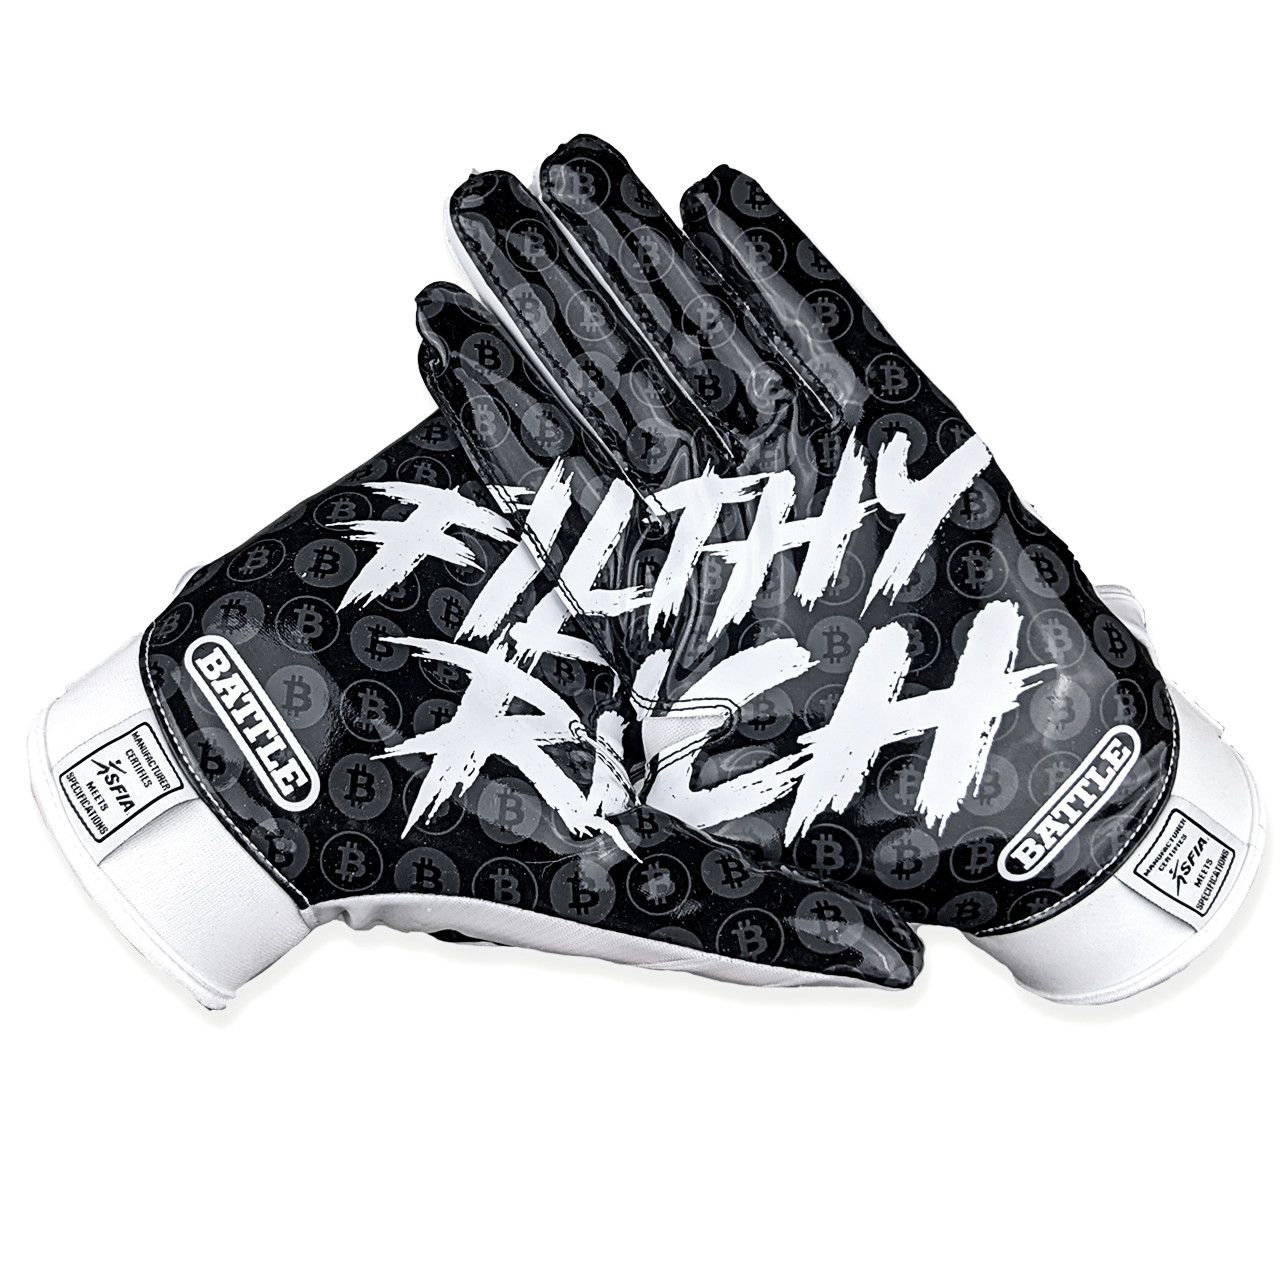 White $ BAGS Football Gloves